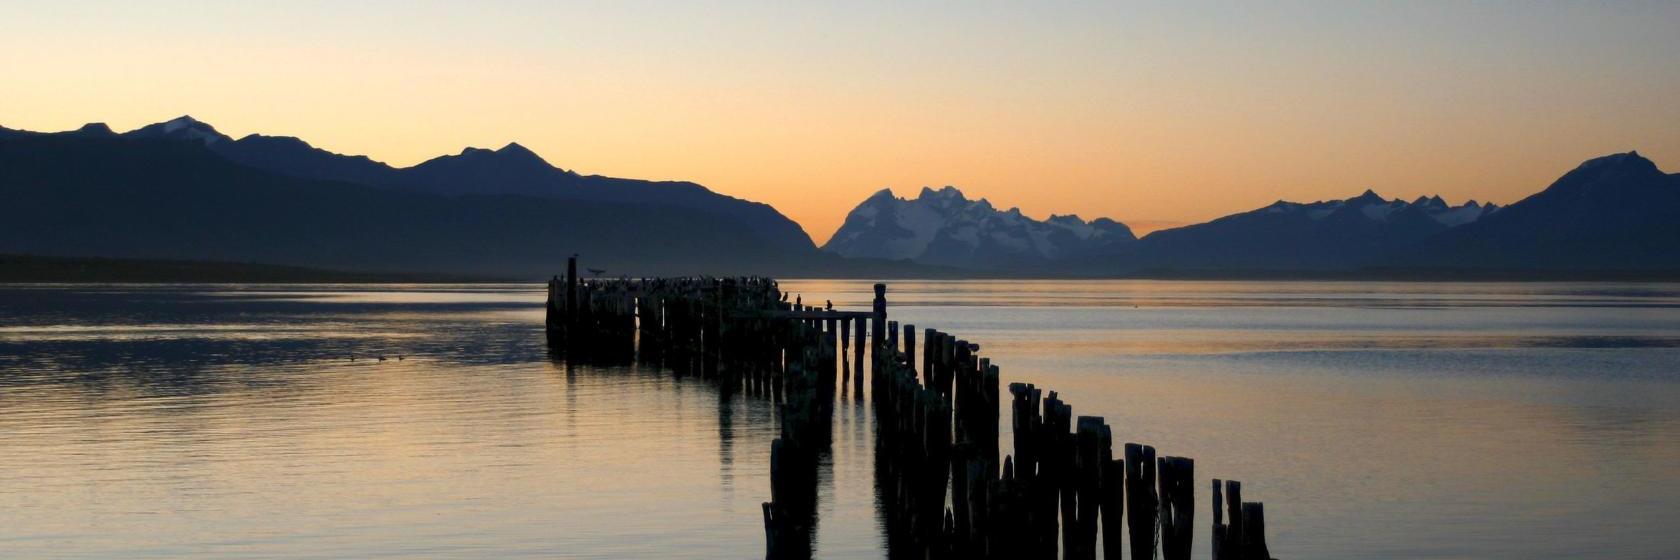 Os 10 melhores hotéis de Puerto Natales, Chile (a partir de R$ 143)